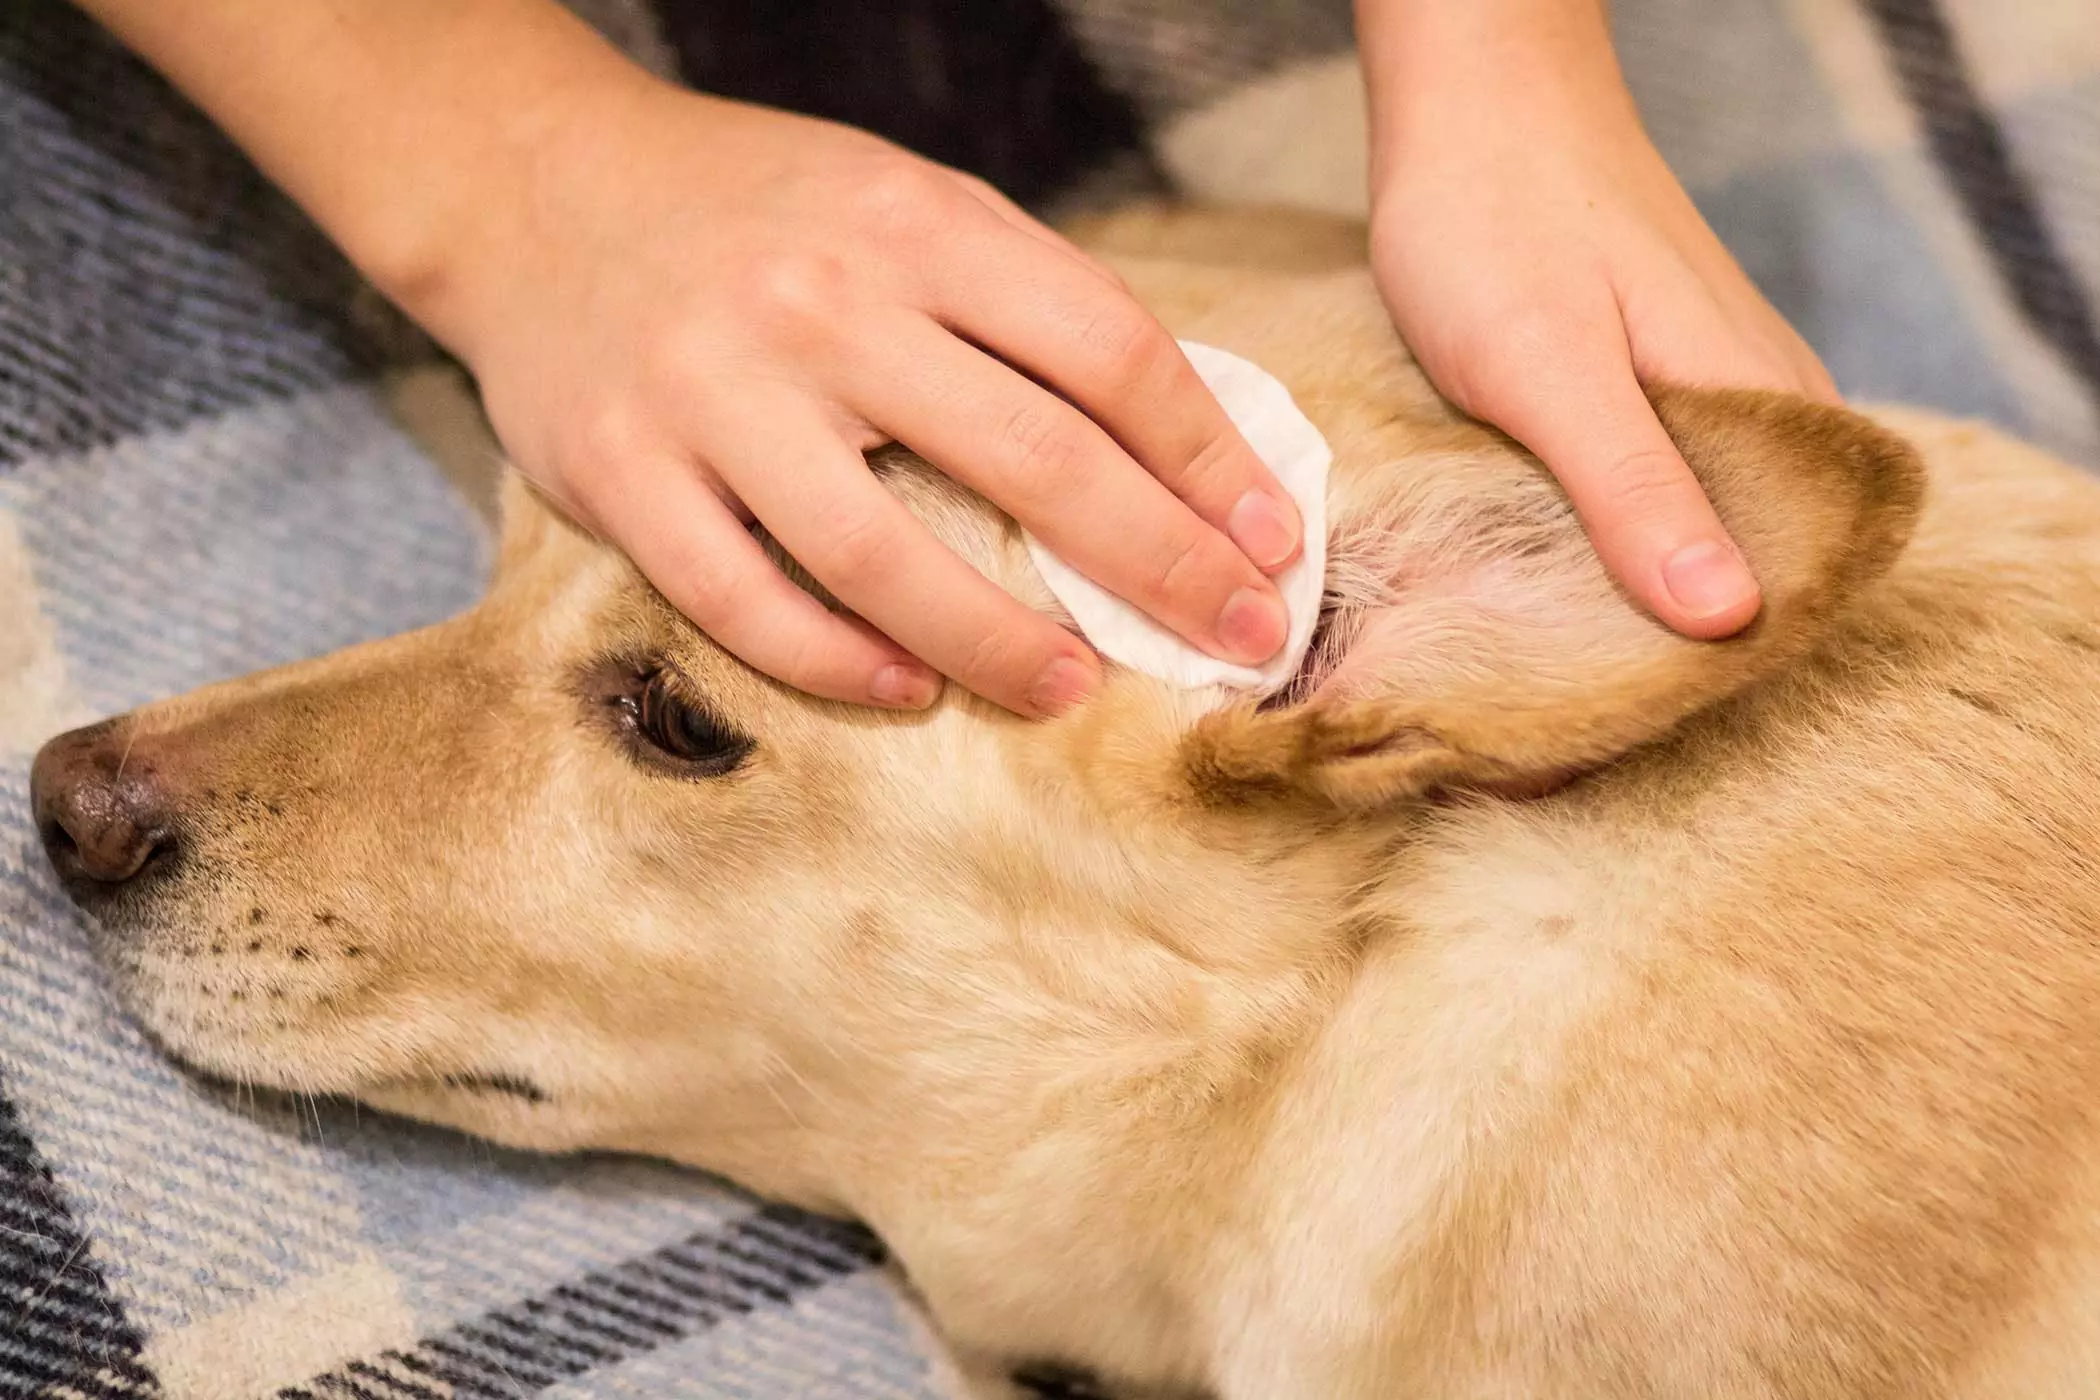 Como limpar os ouvidos de seu cão? Então como você limpa corretamente o canal auditivo de seu cão?